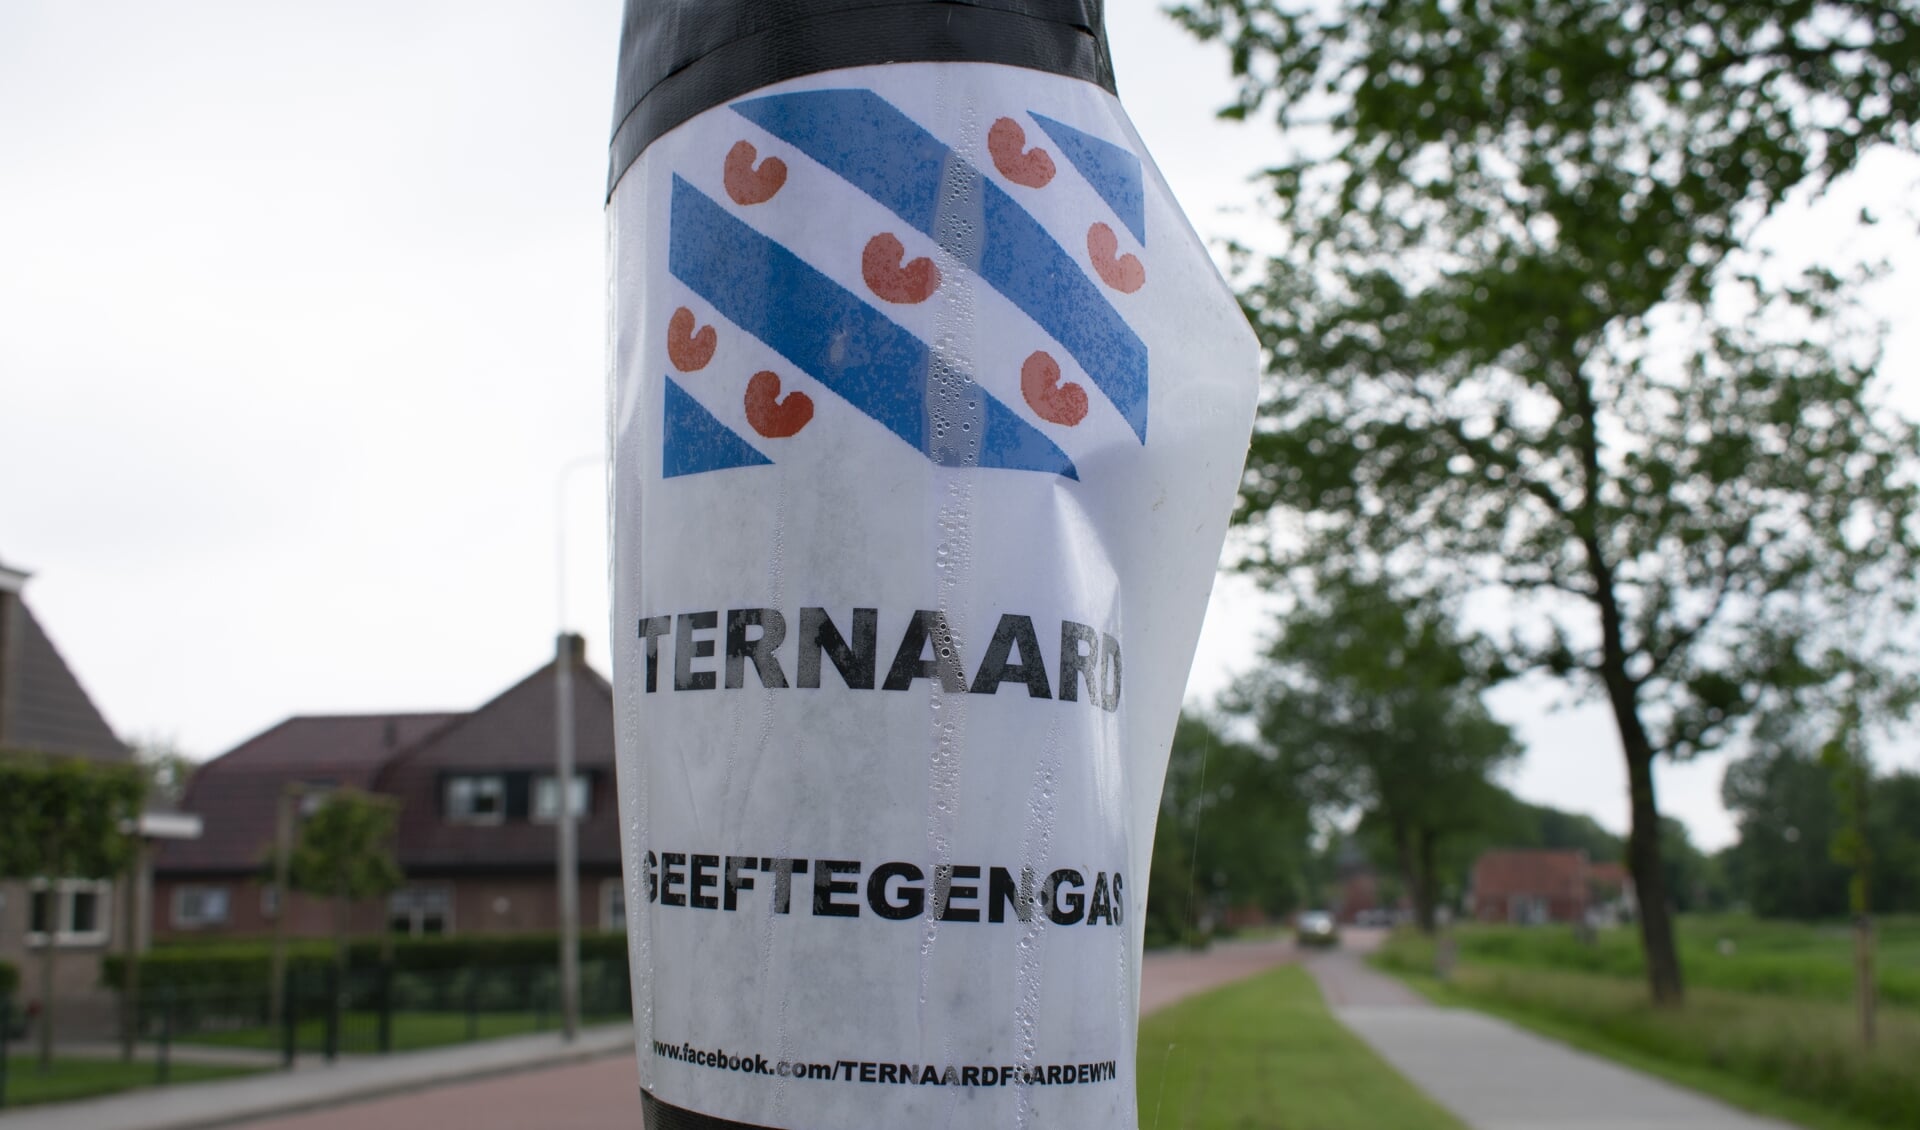 Het dorp Ternaard is net als de Friese overheden tegen nieuwe gaswinning. De Waddenvereniging zal zich "met alle juridische middelen" verzetten.